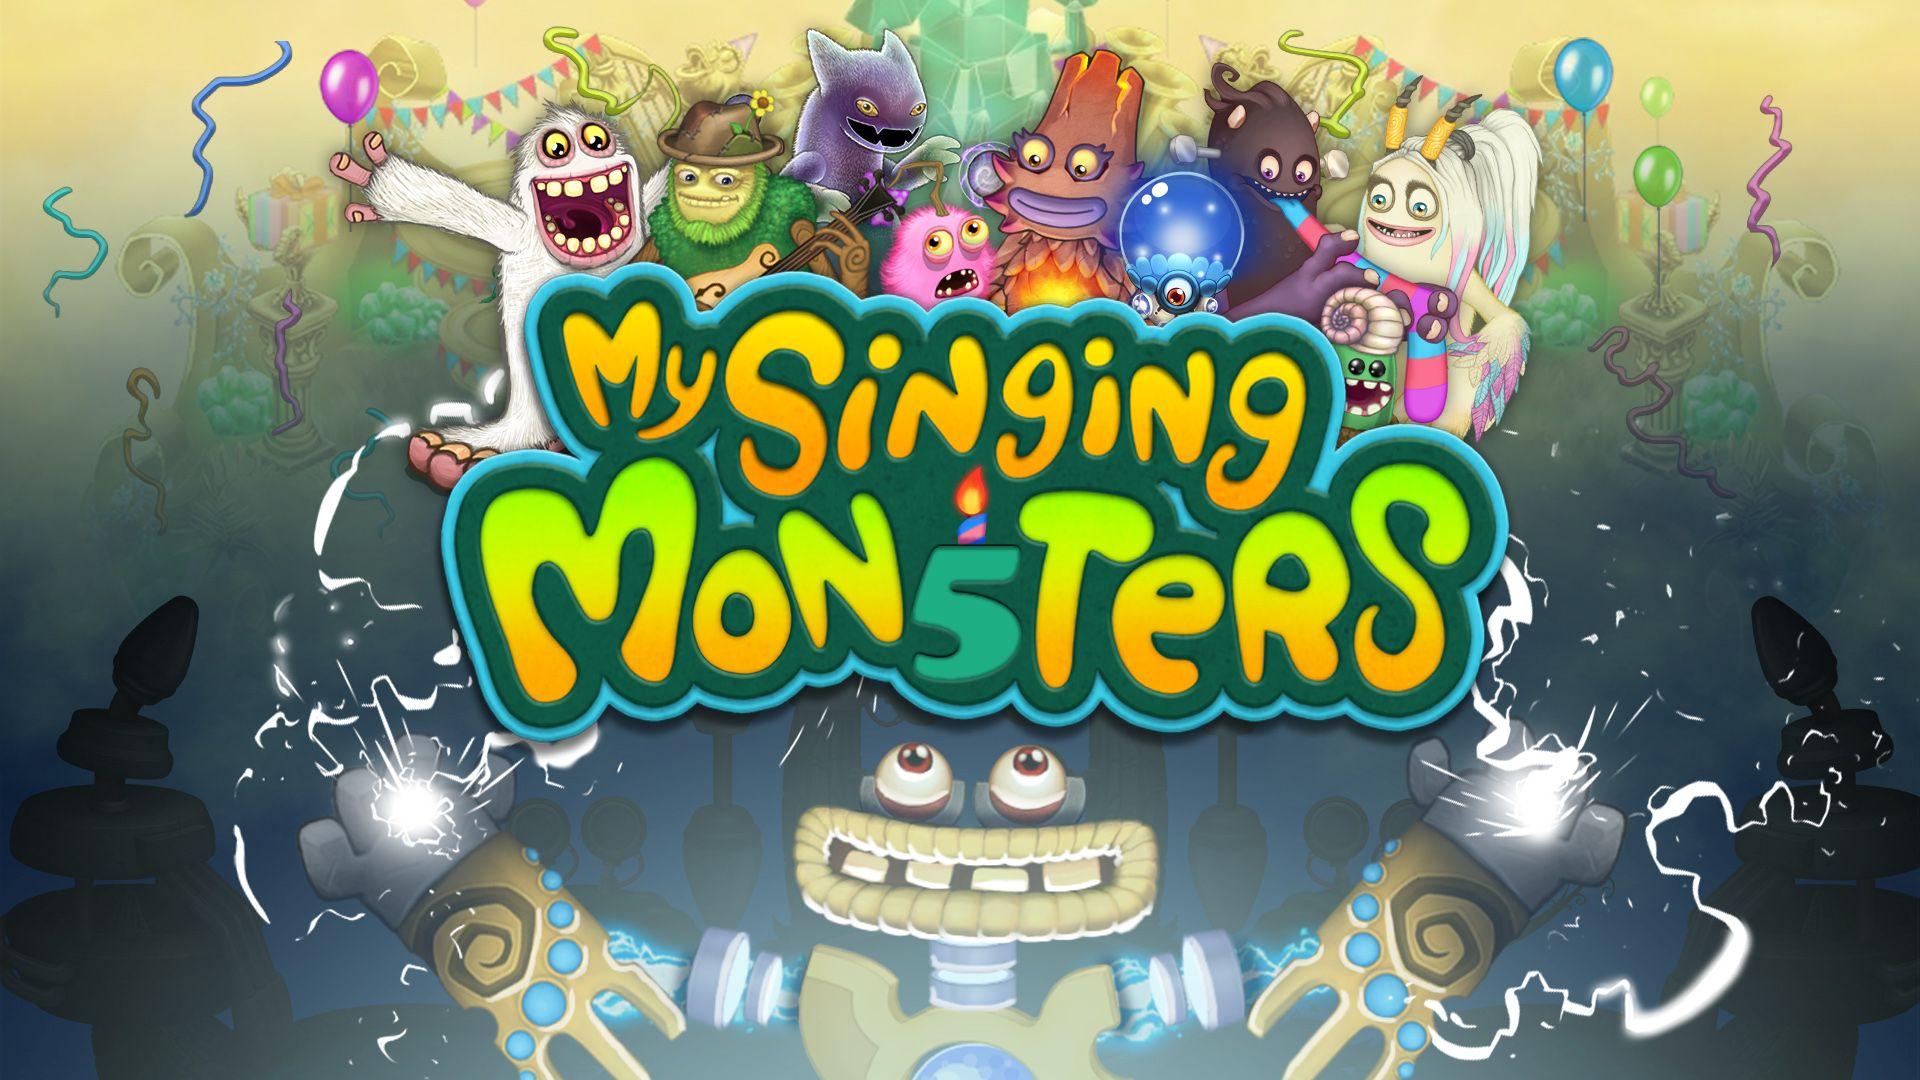 My singing monsters текстуры